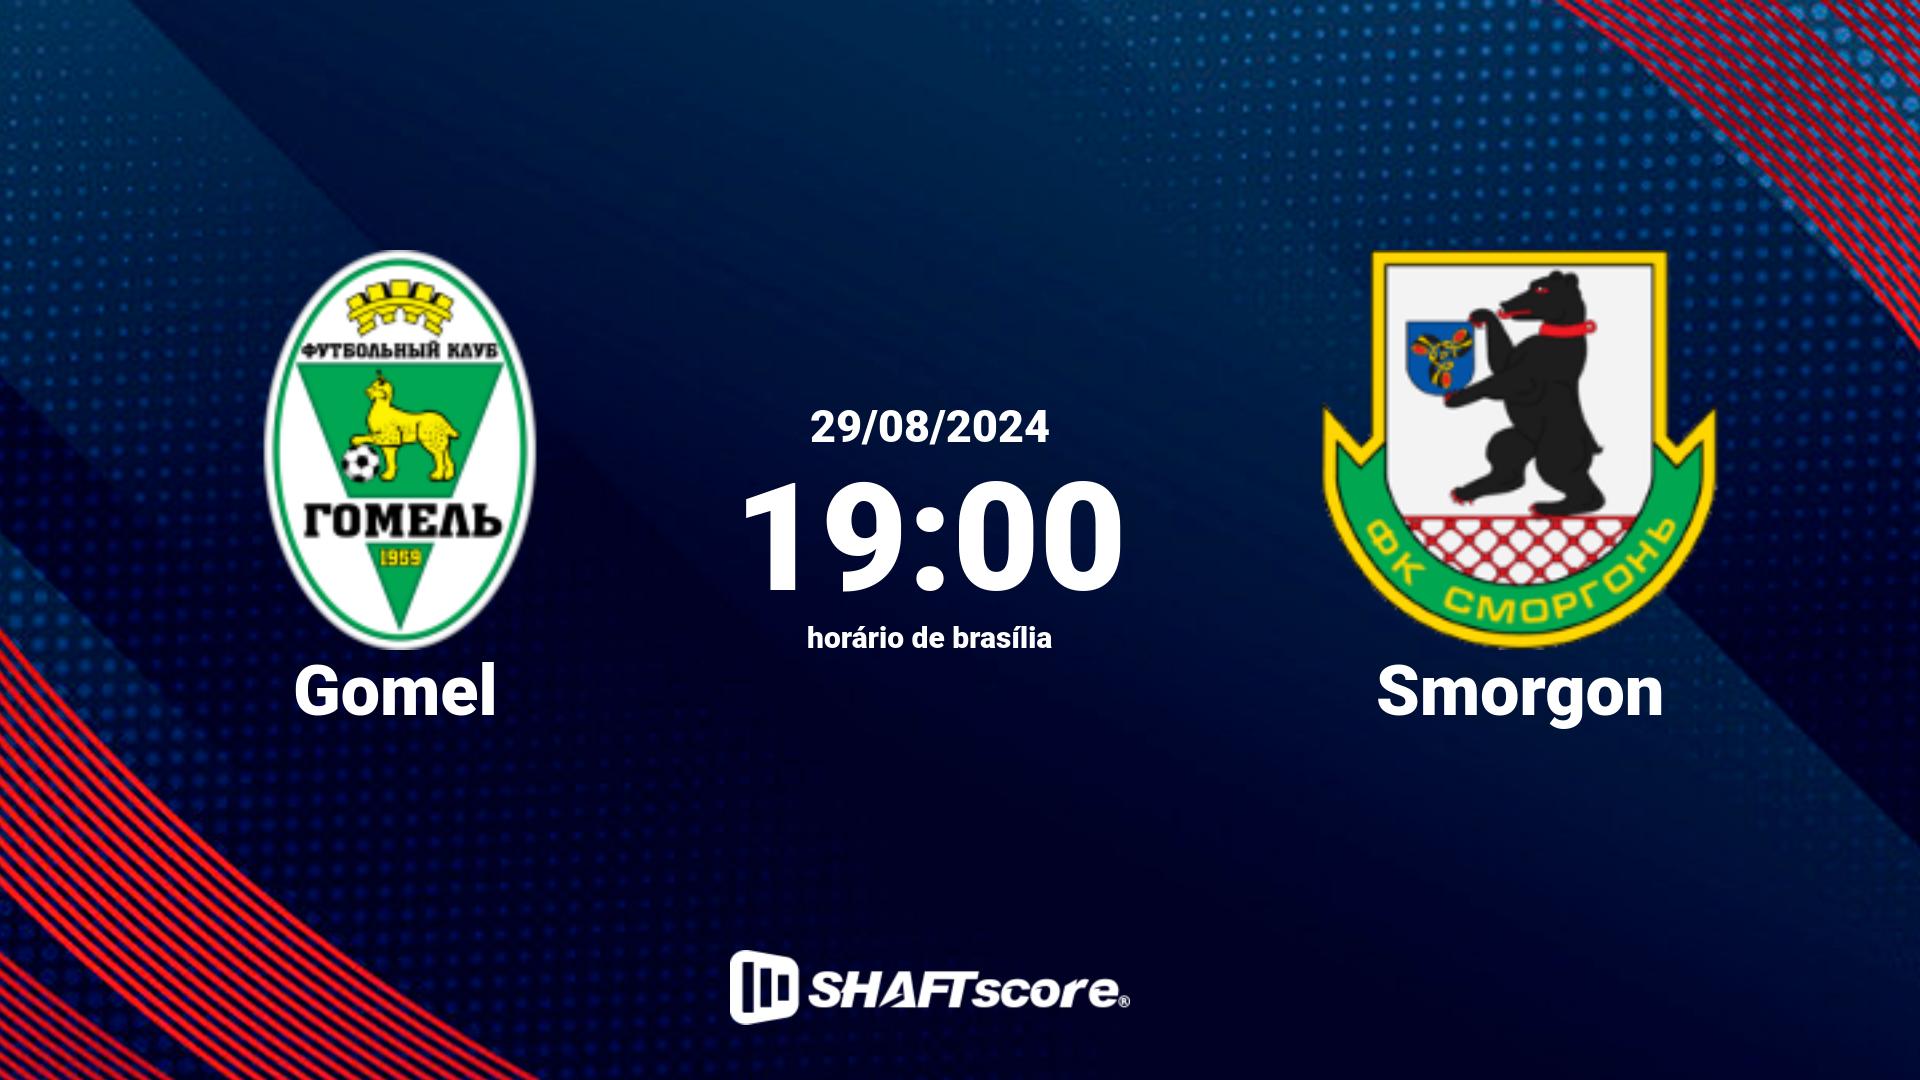 Estatísticas do jogo Gomel vs Smorgon 29.08 19:00